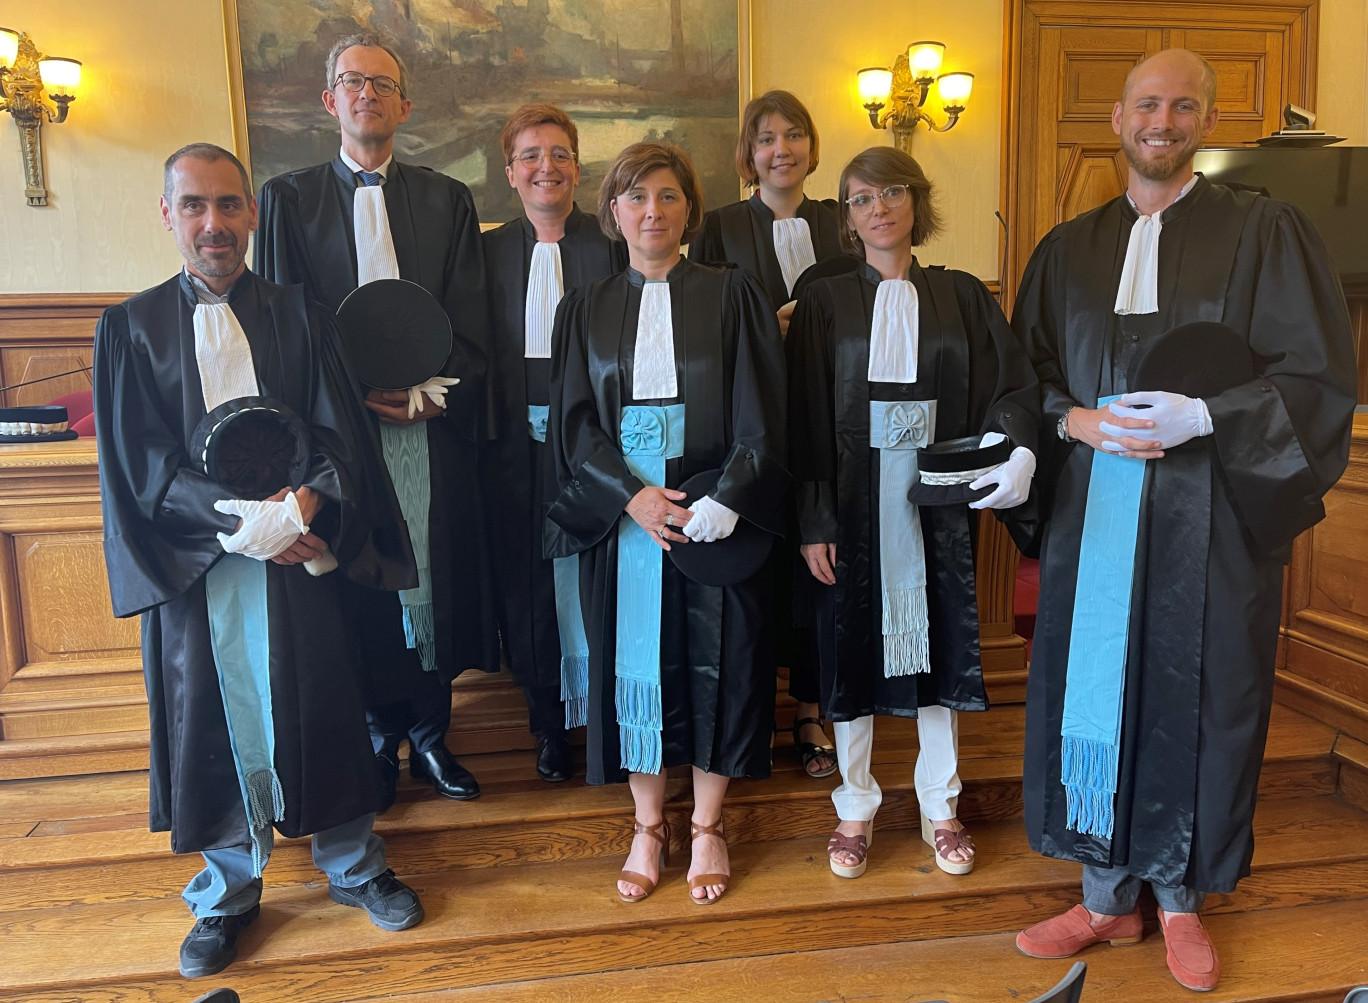 De gauche à droite : Adam Chodkiewiez, vice-procureur de la République, Sylvain Barbier Sainte-Marie, procureur, et Julie Astorg, présidente du tribunal, avec les nouveaux juges.